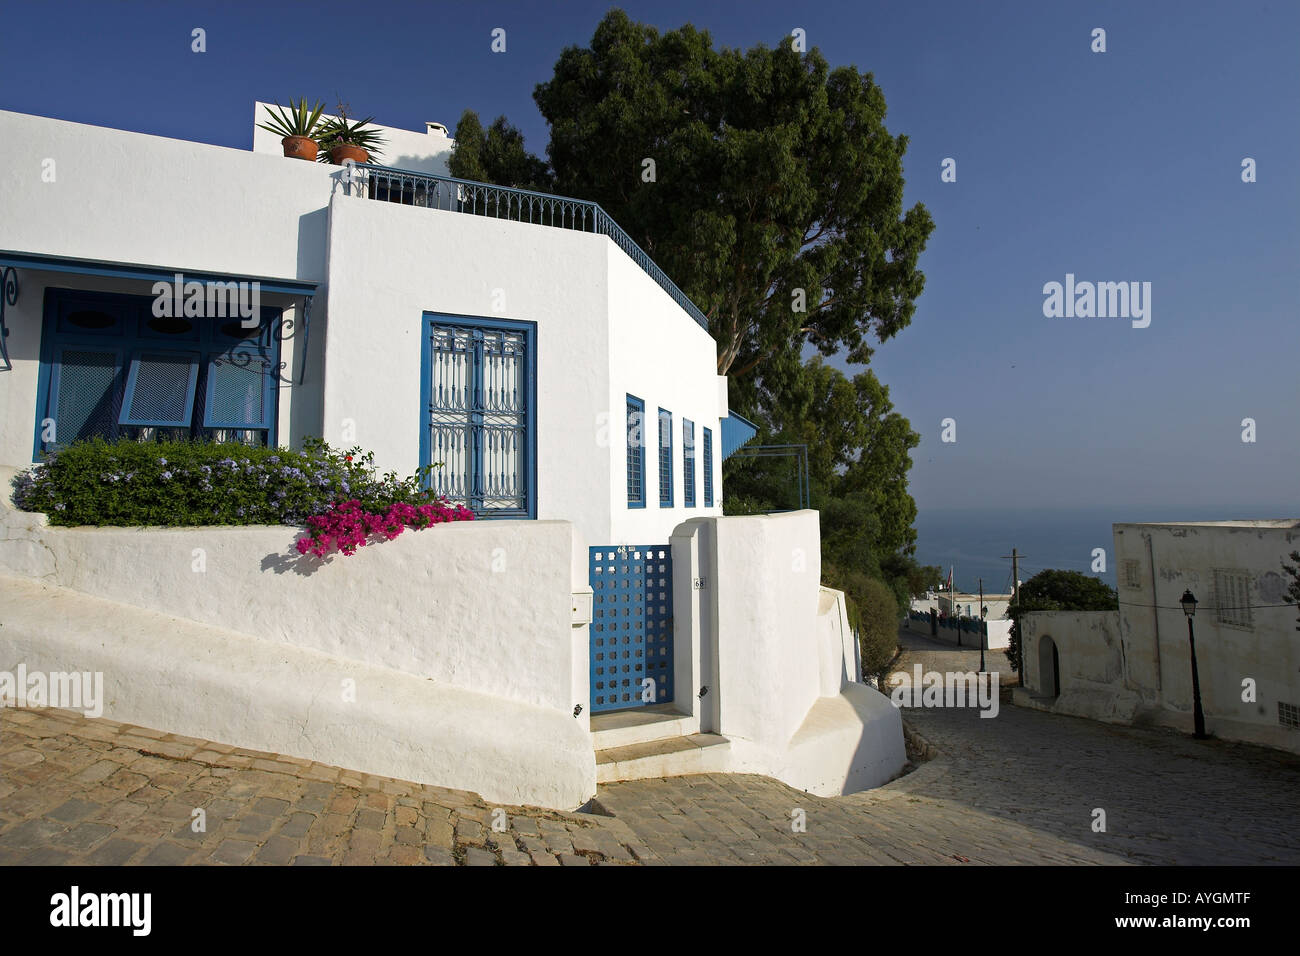 Accueil blanchis avec garniture bleu lilas et bougainvillées sur rue pavée, Sidi Bou Said Tunisie village Banque D'Images